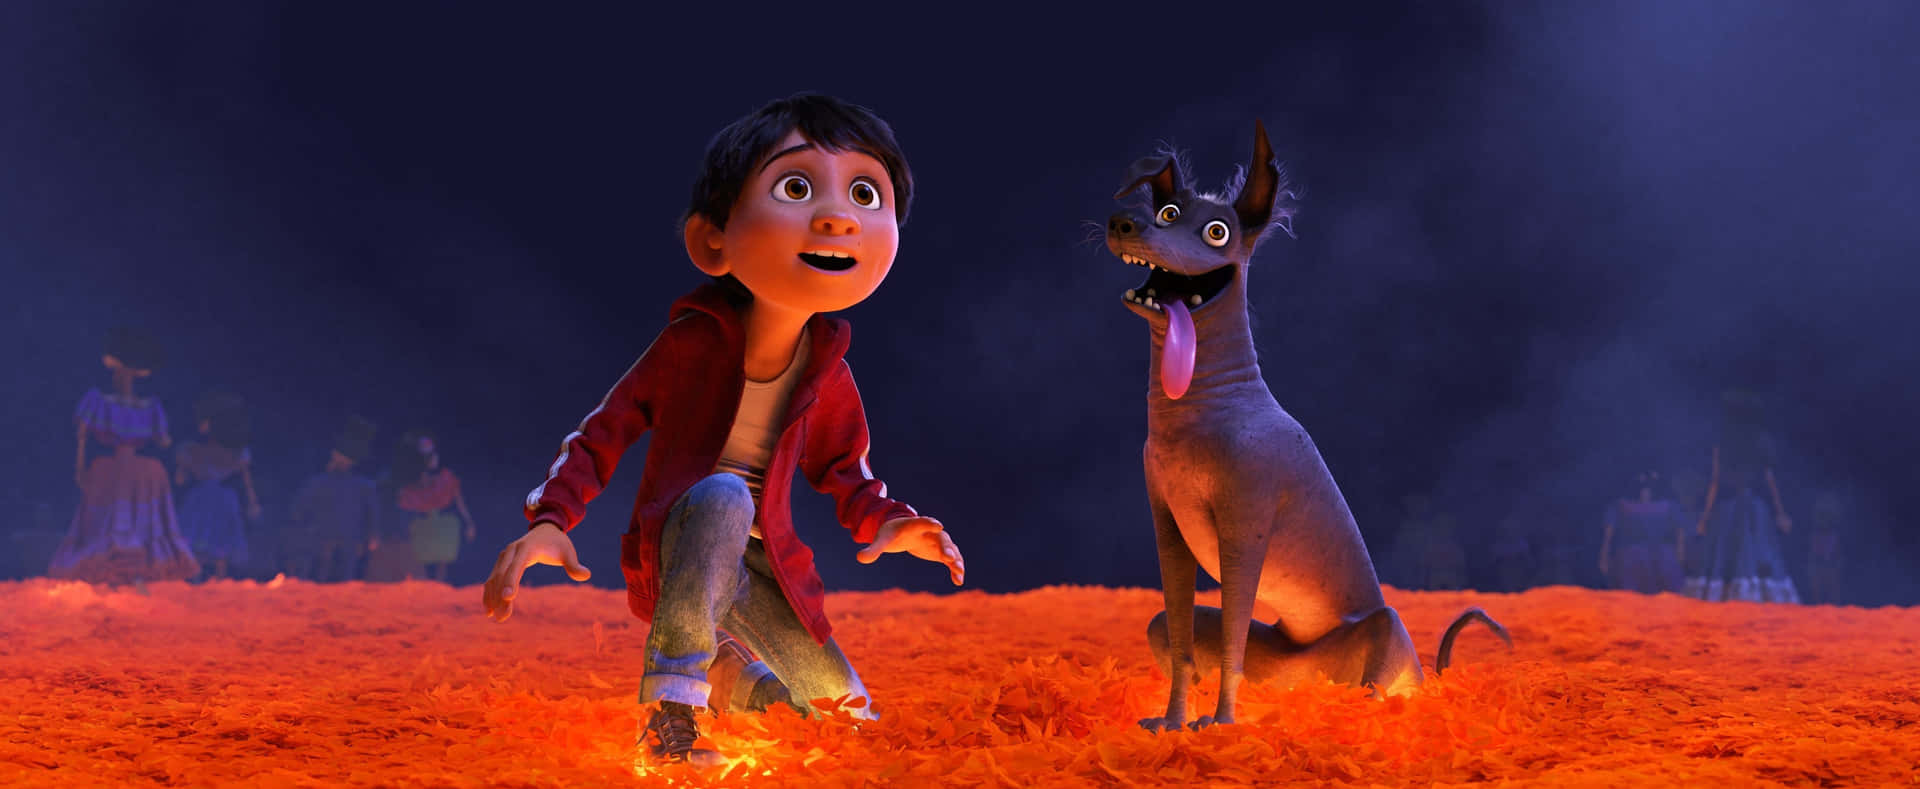 Uniscitia Miguel E Ai Suoi Amici In Questa Indimenticabile Avventura Nel Film D'animazione Disney-pixar, Coco. Sfondo